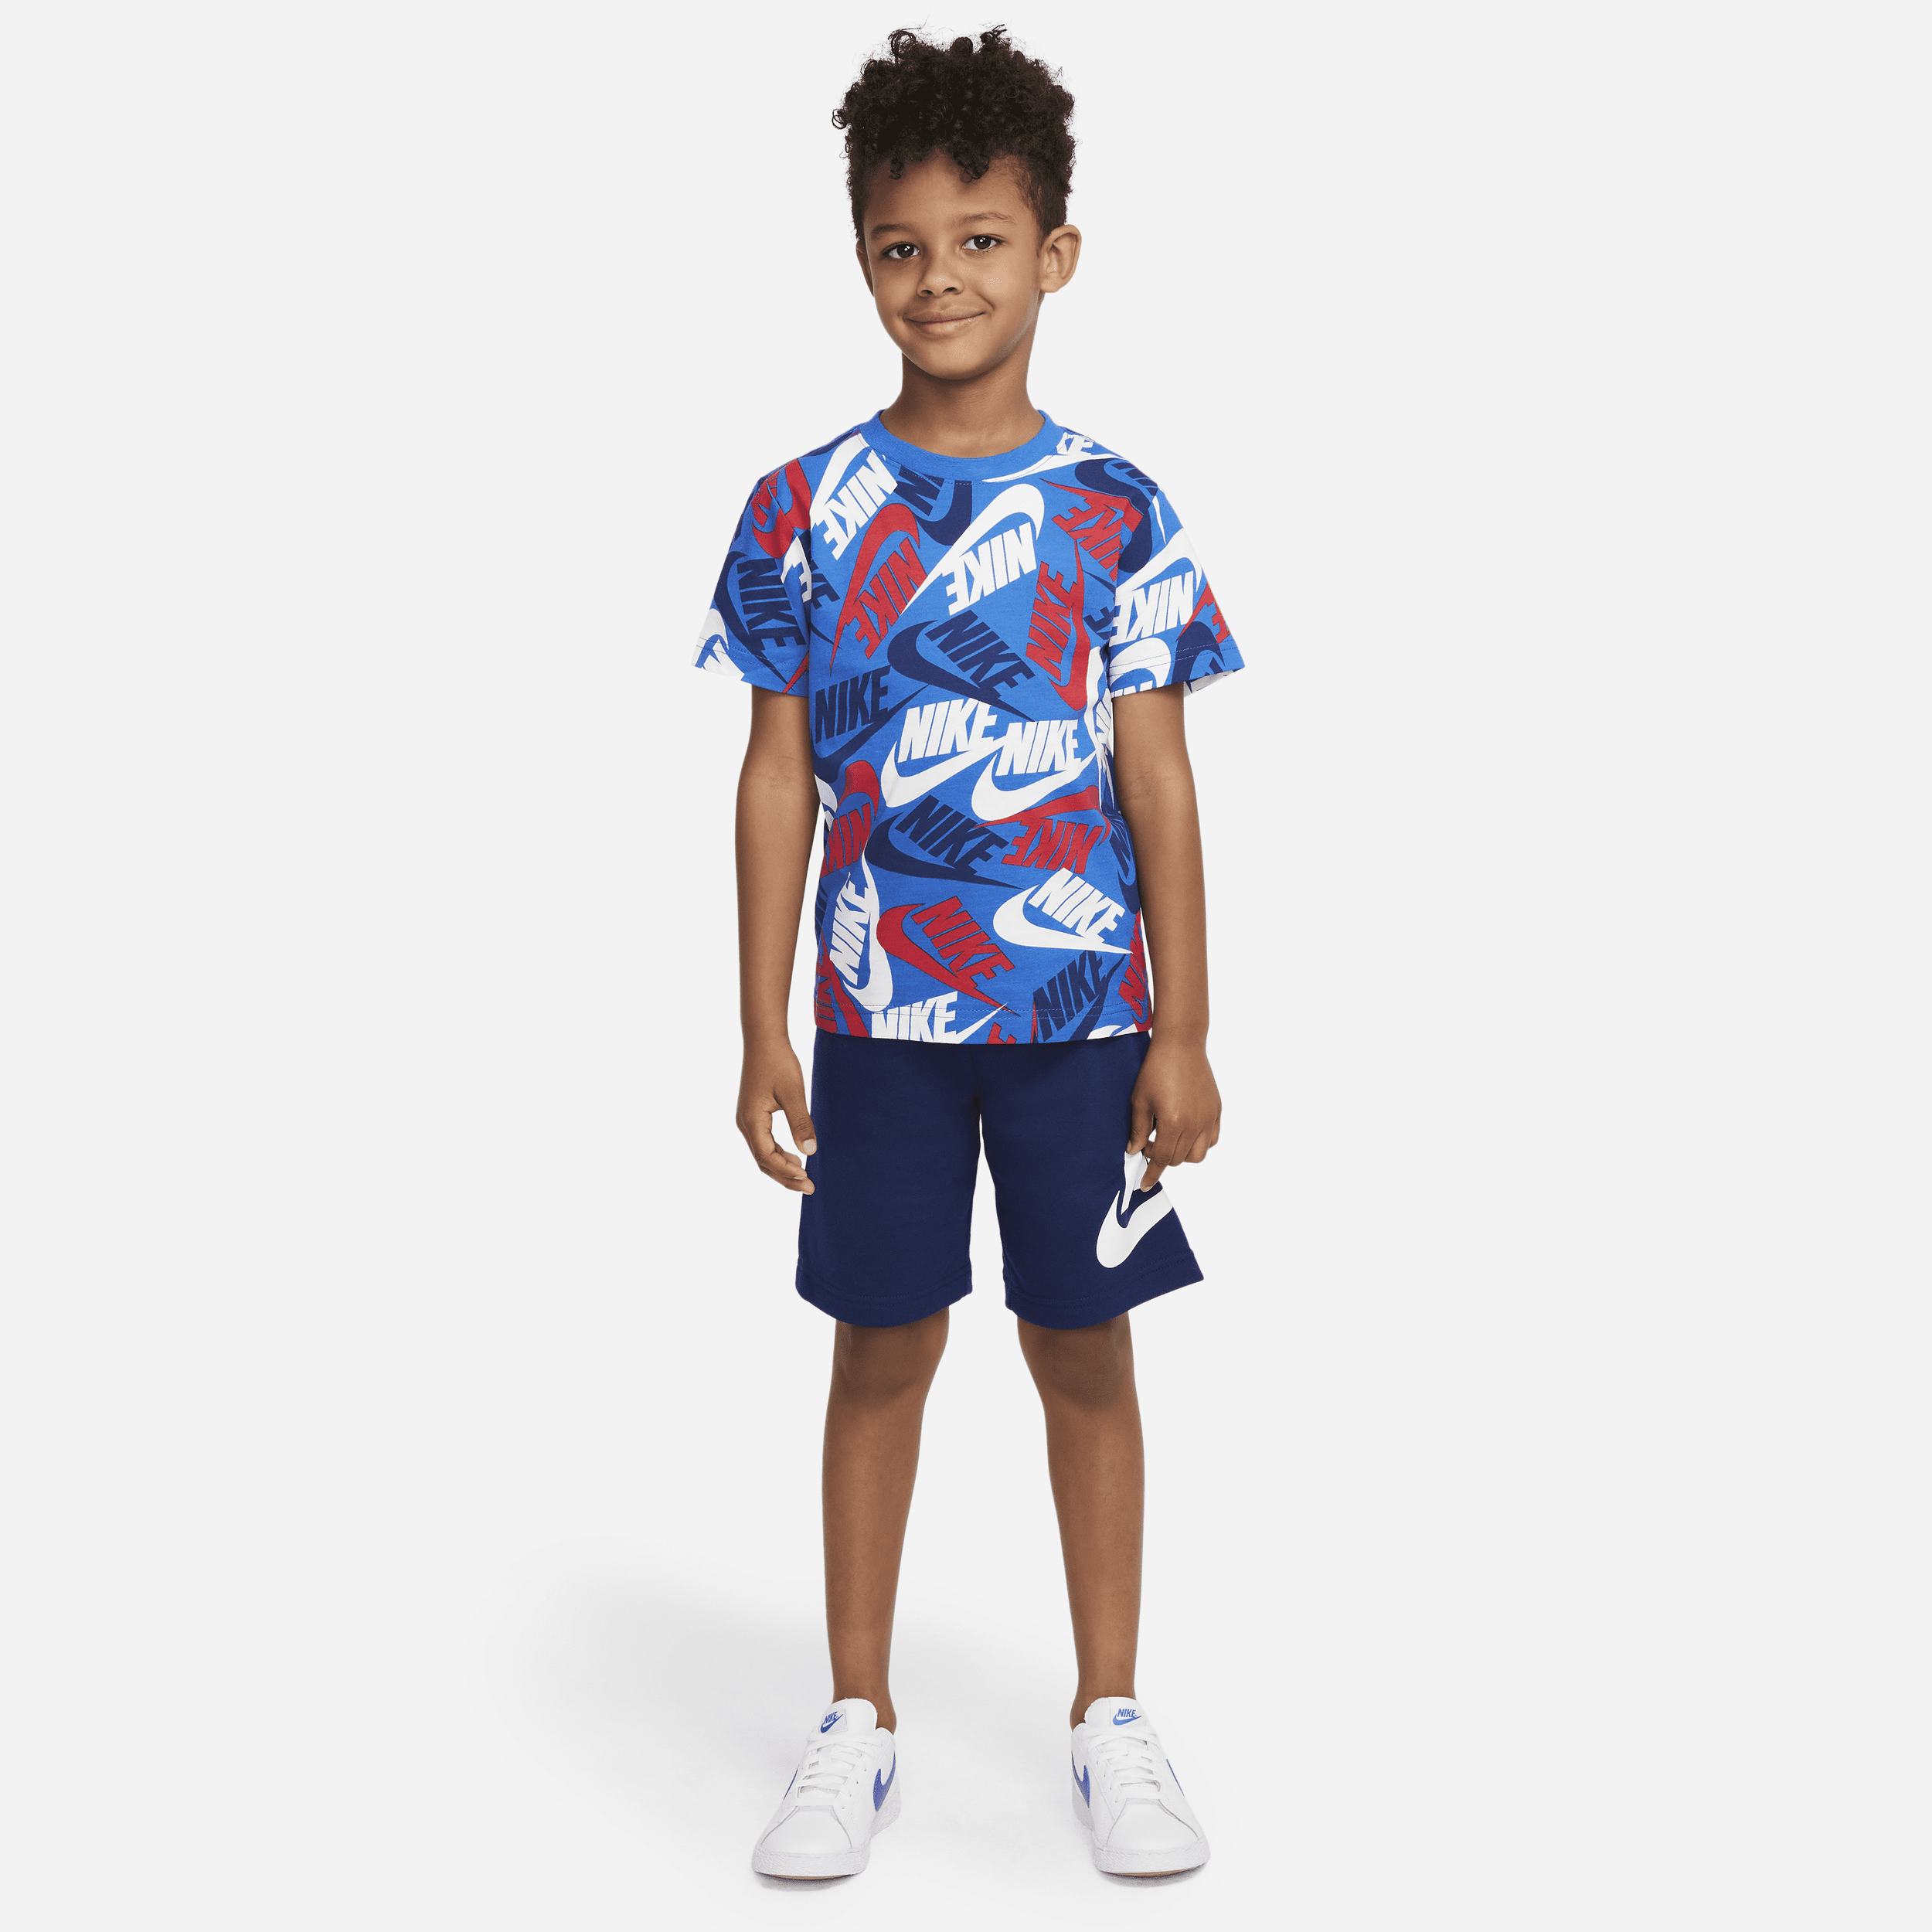 Nike Sportswear Conjunto de camiseta y pantalón corto - Niño/a pequeño/a - Multicolor